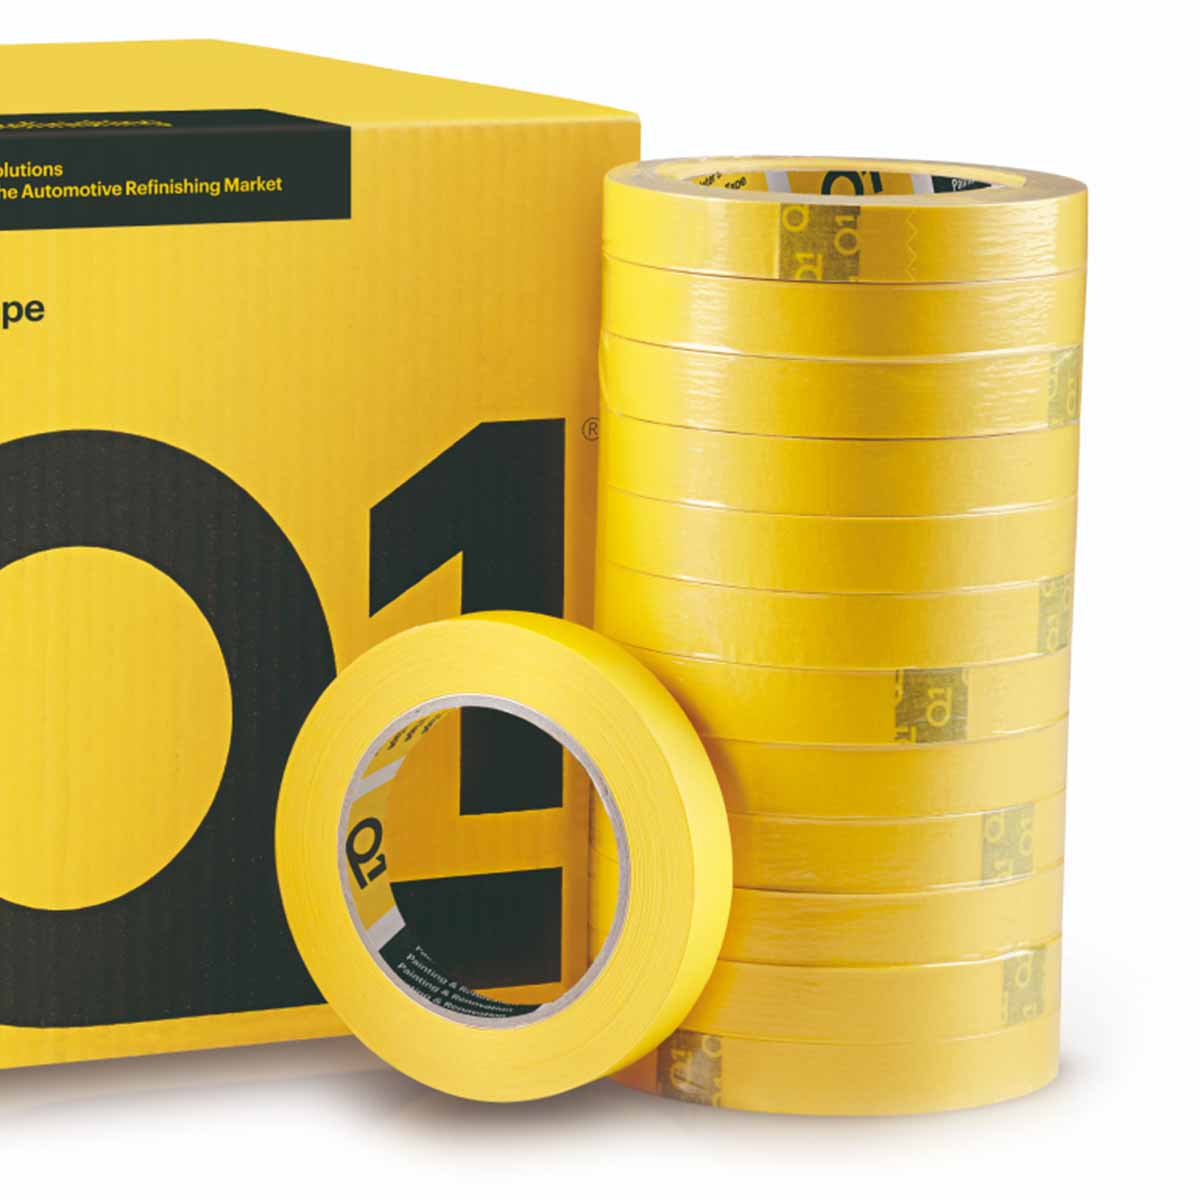 Q1 Premium Masking Tape 1.5" | Case of 24 Rolls